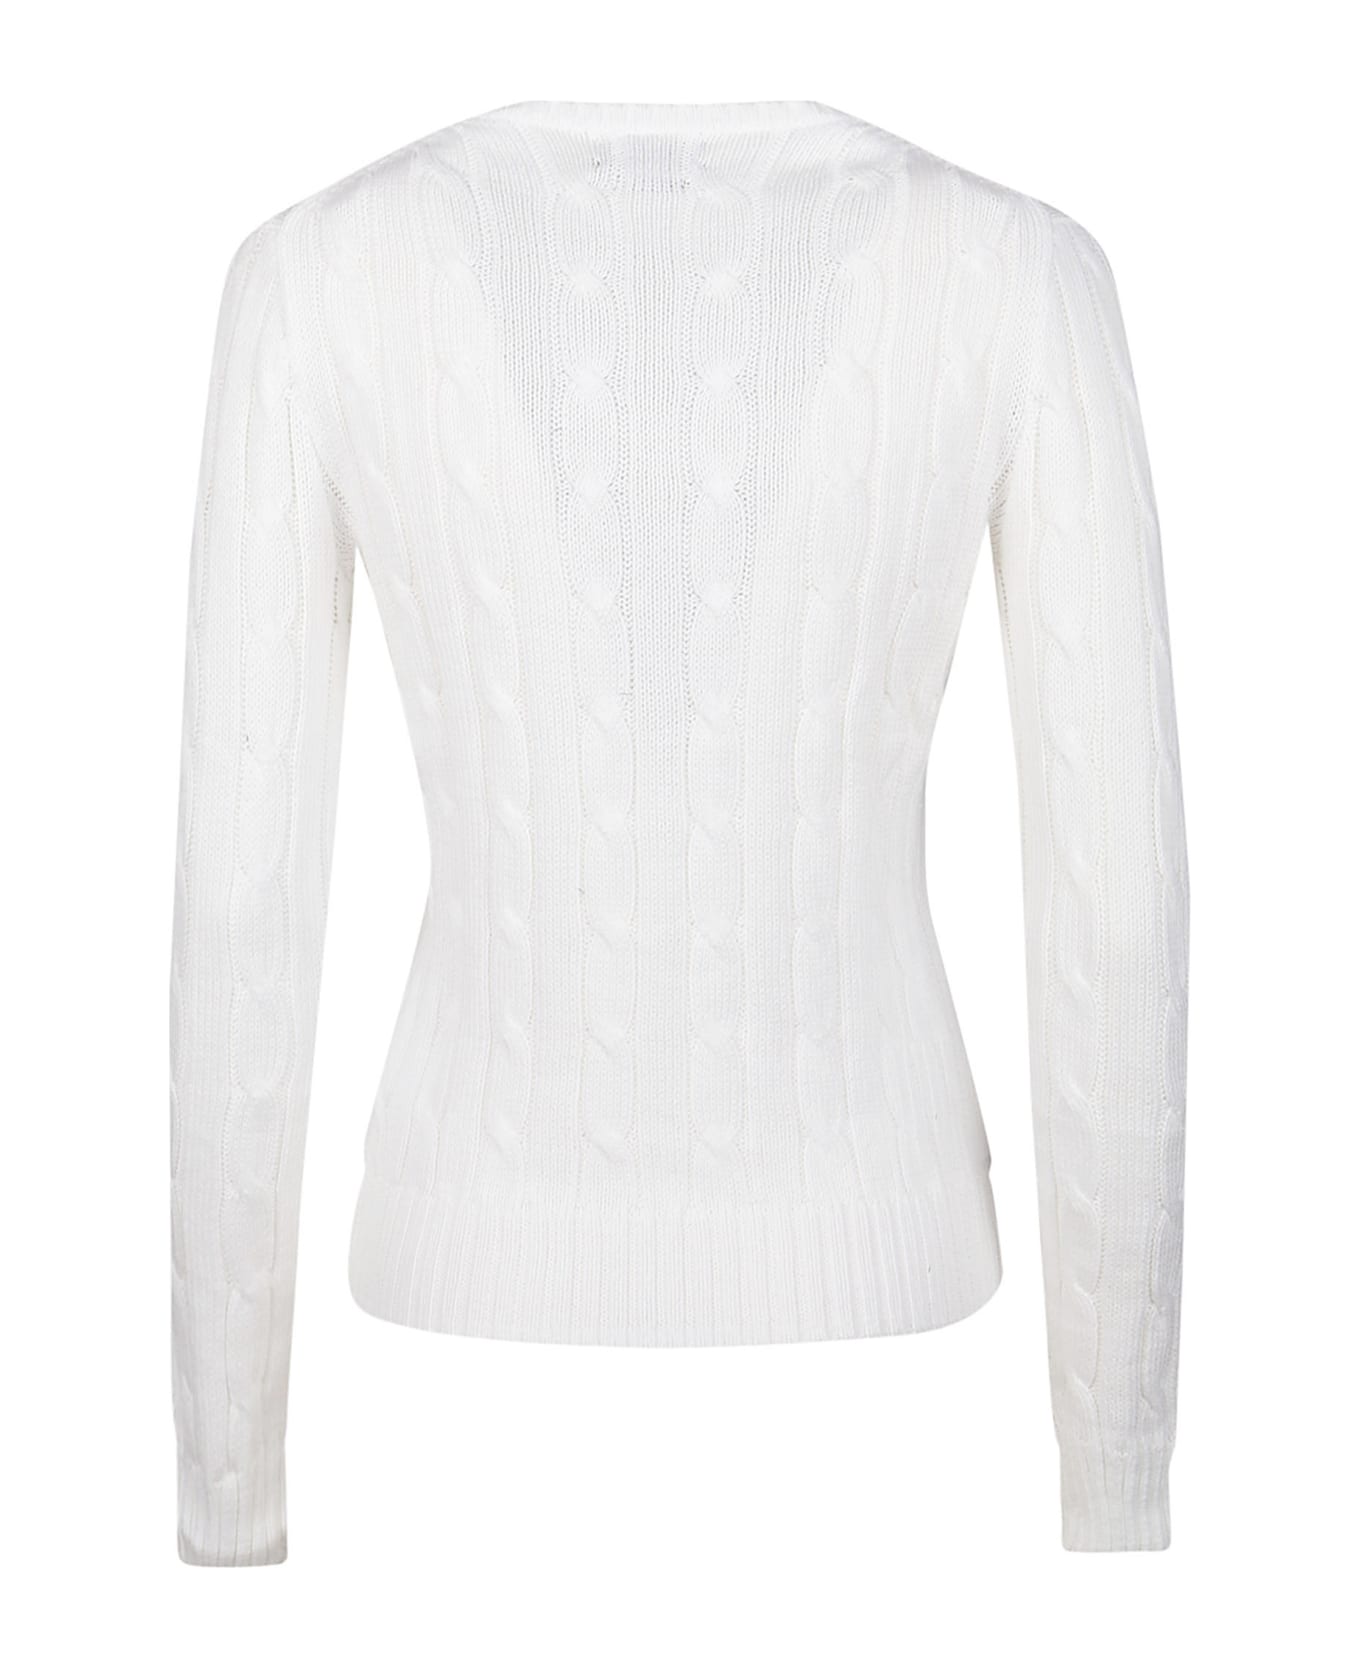 Polo Ralph Lauren Julianna Sweater - White ニットウェア